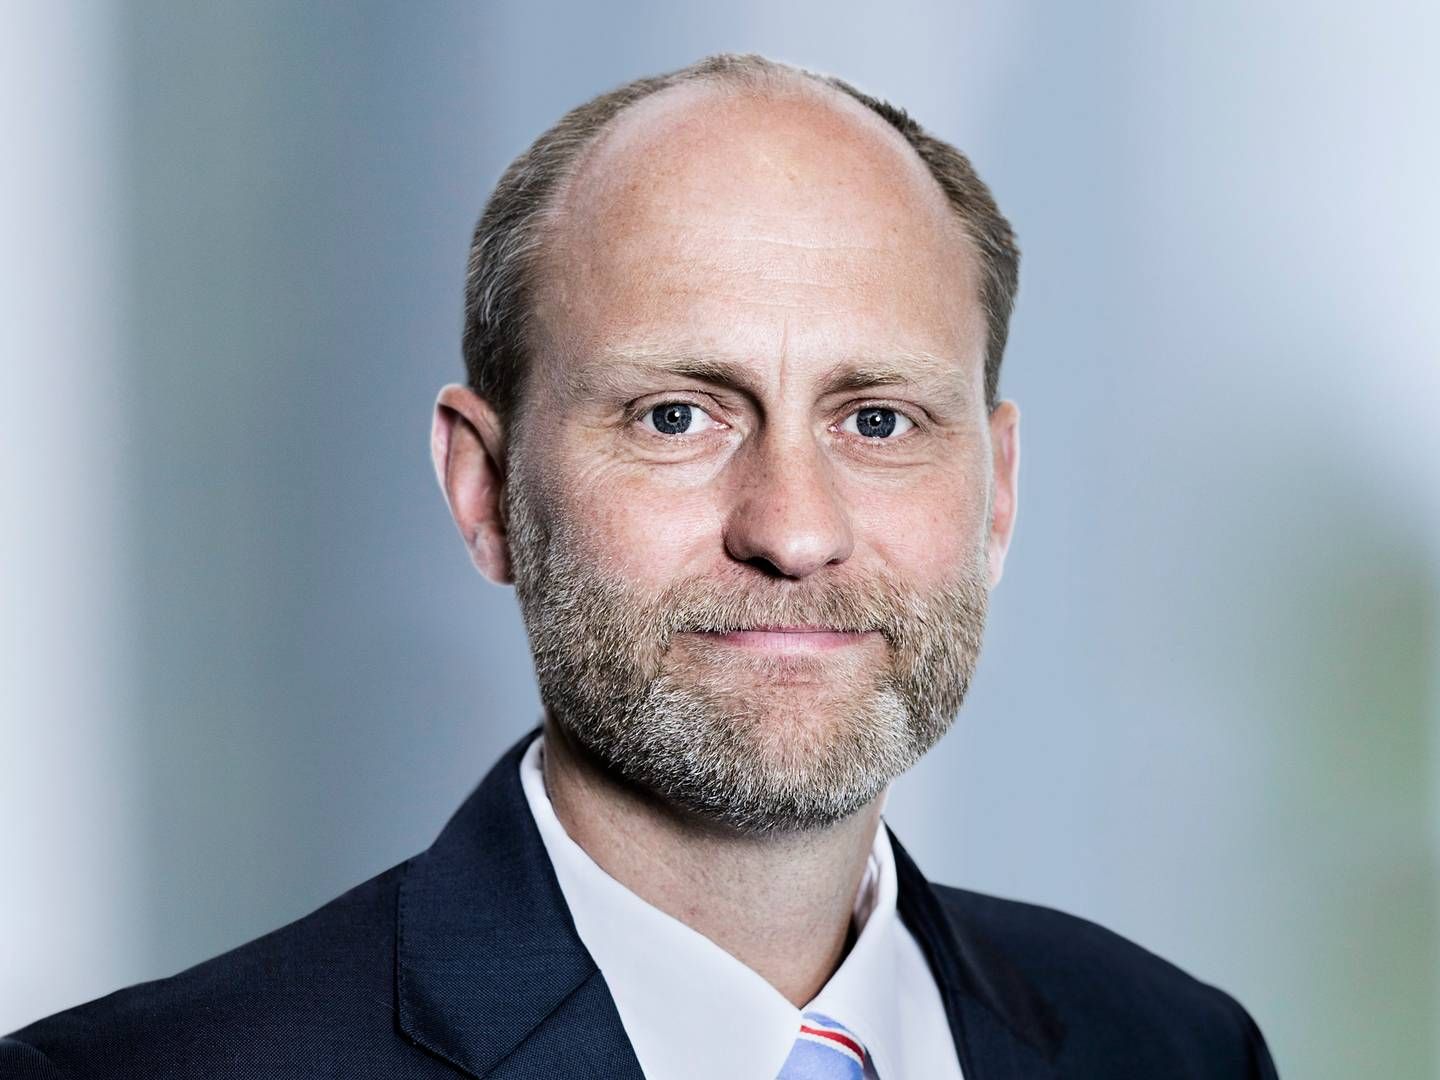 Søren Jelert, CFO of GN Hearing | Photo: Alk